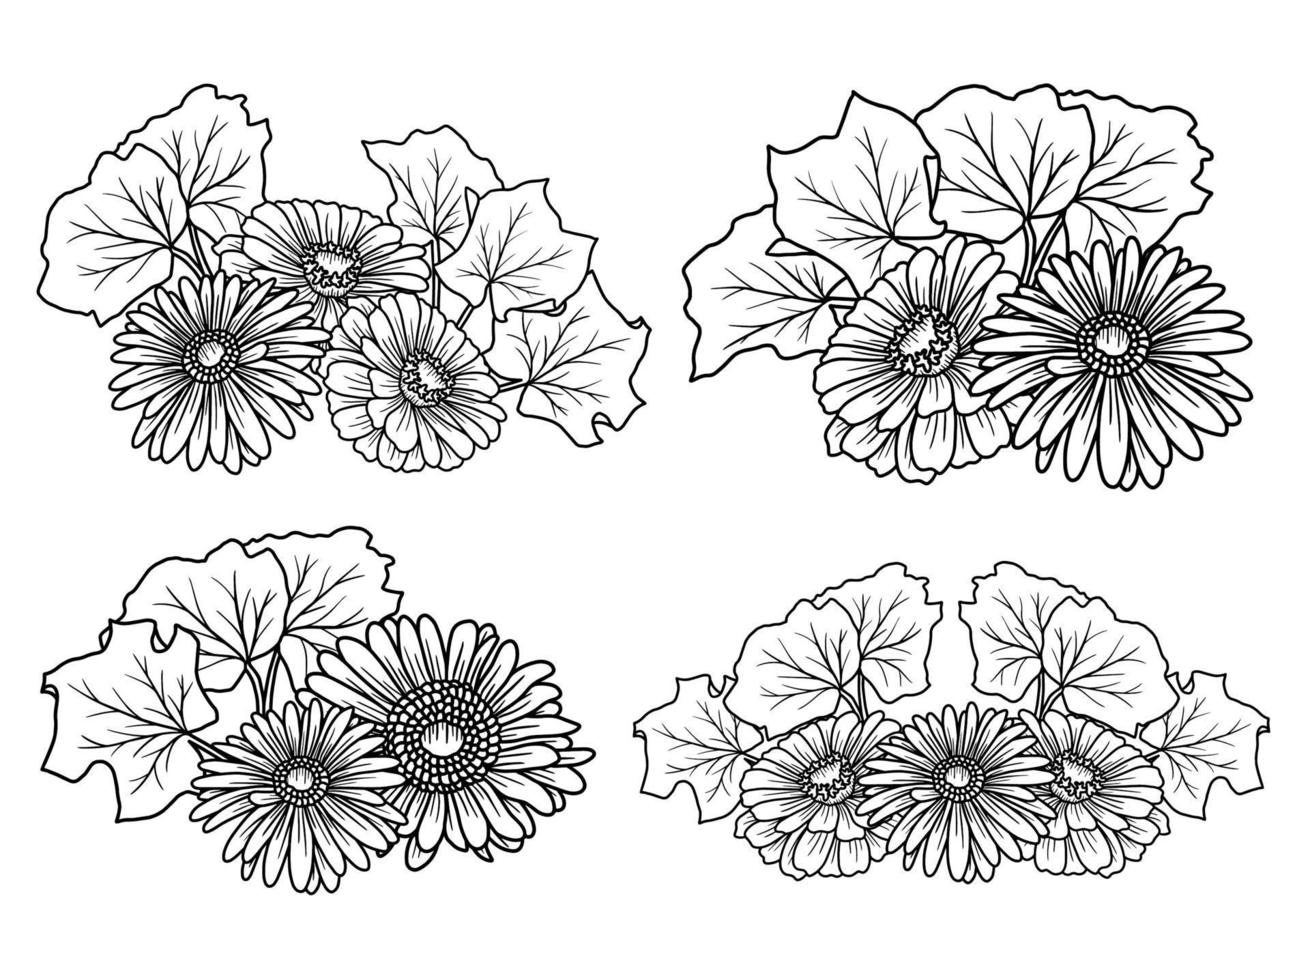 Blumen-Linien-Kunst-Arrangement vektor